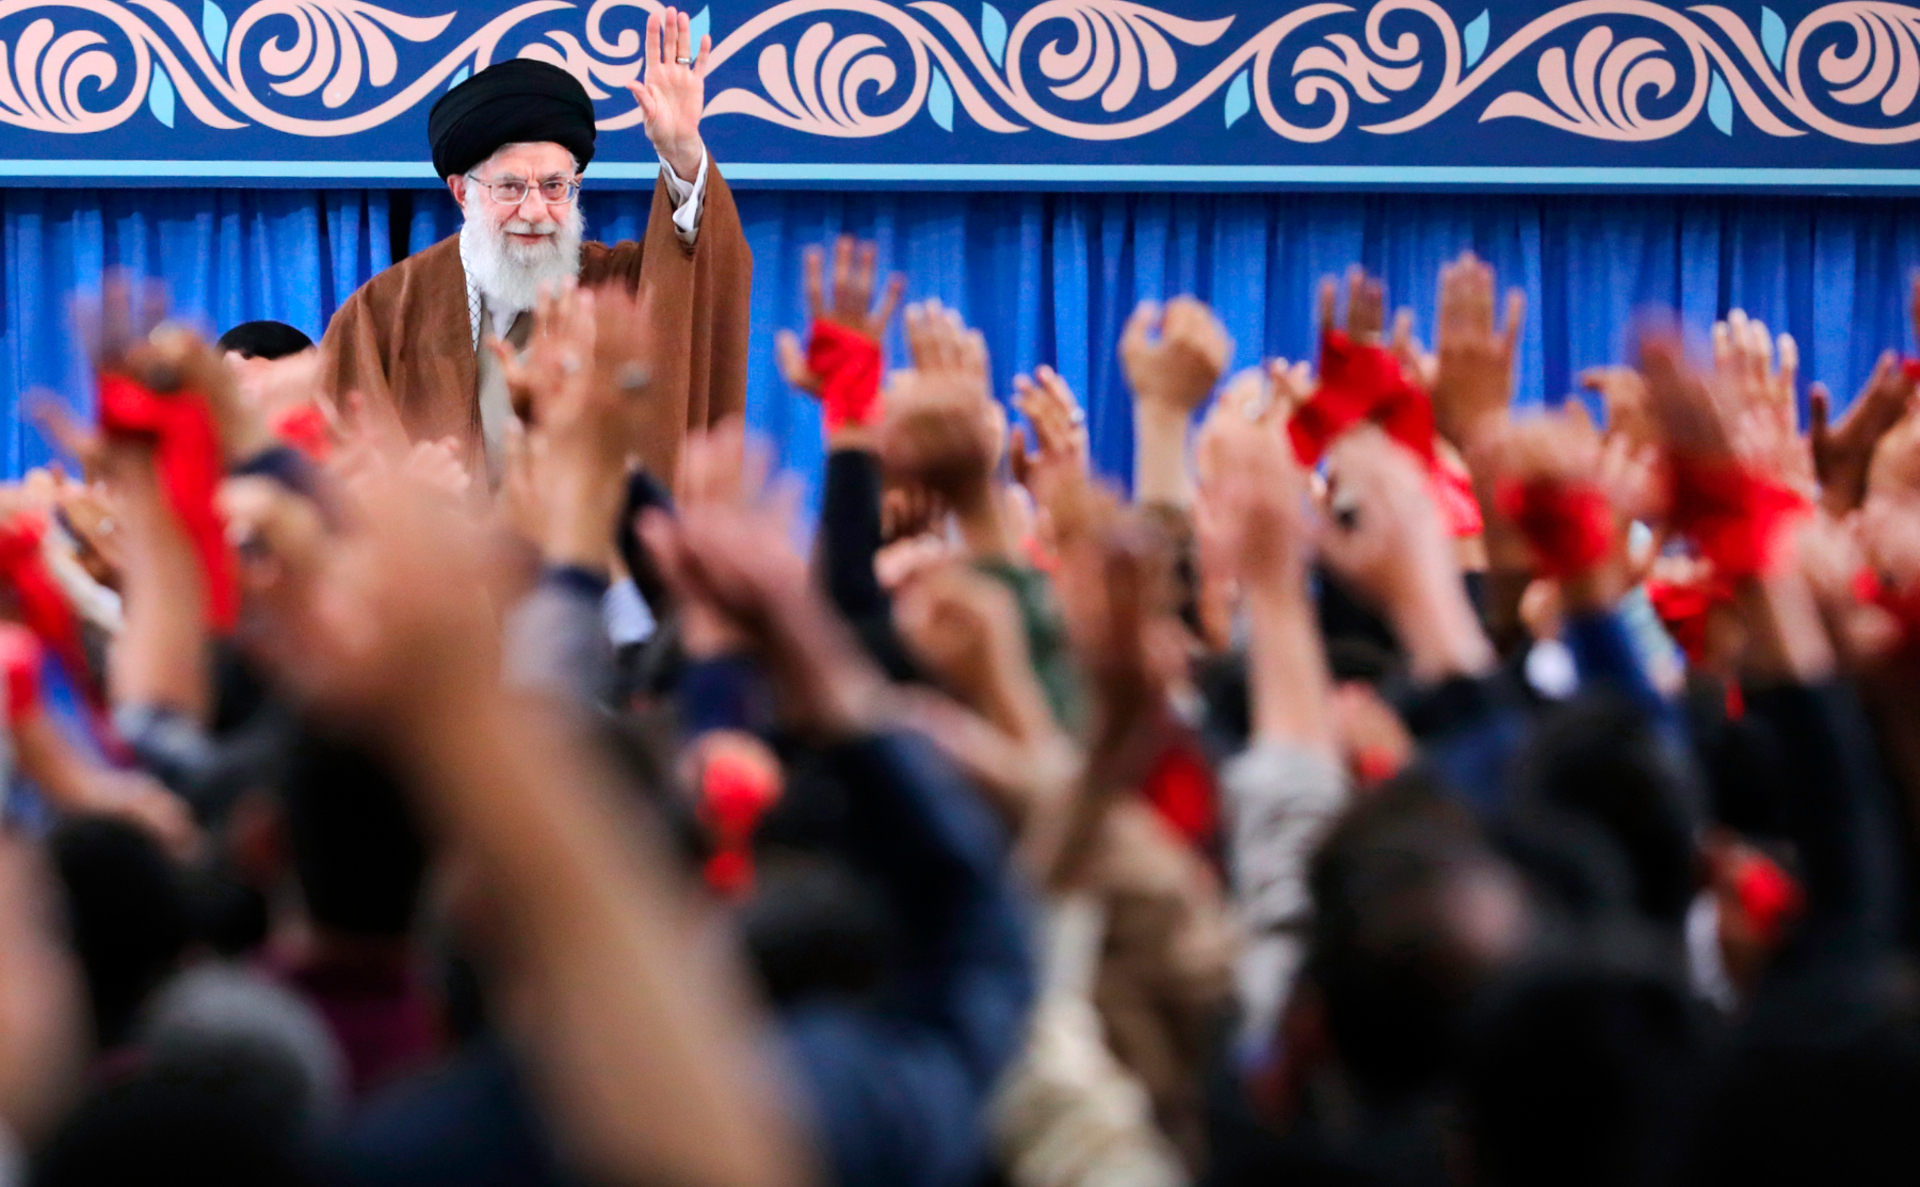 Фото: Пресс-служба аятоллы Али Хаменеи / AP